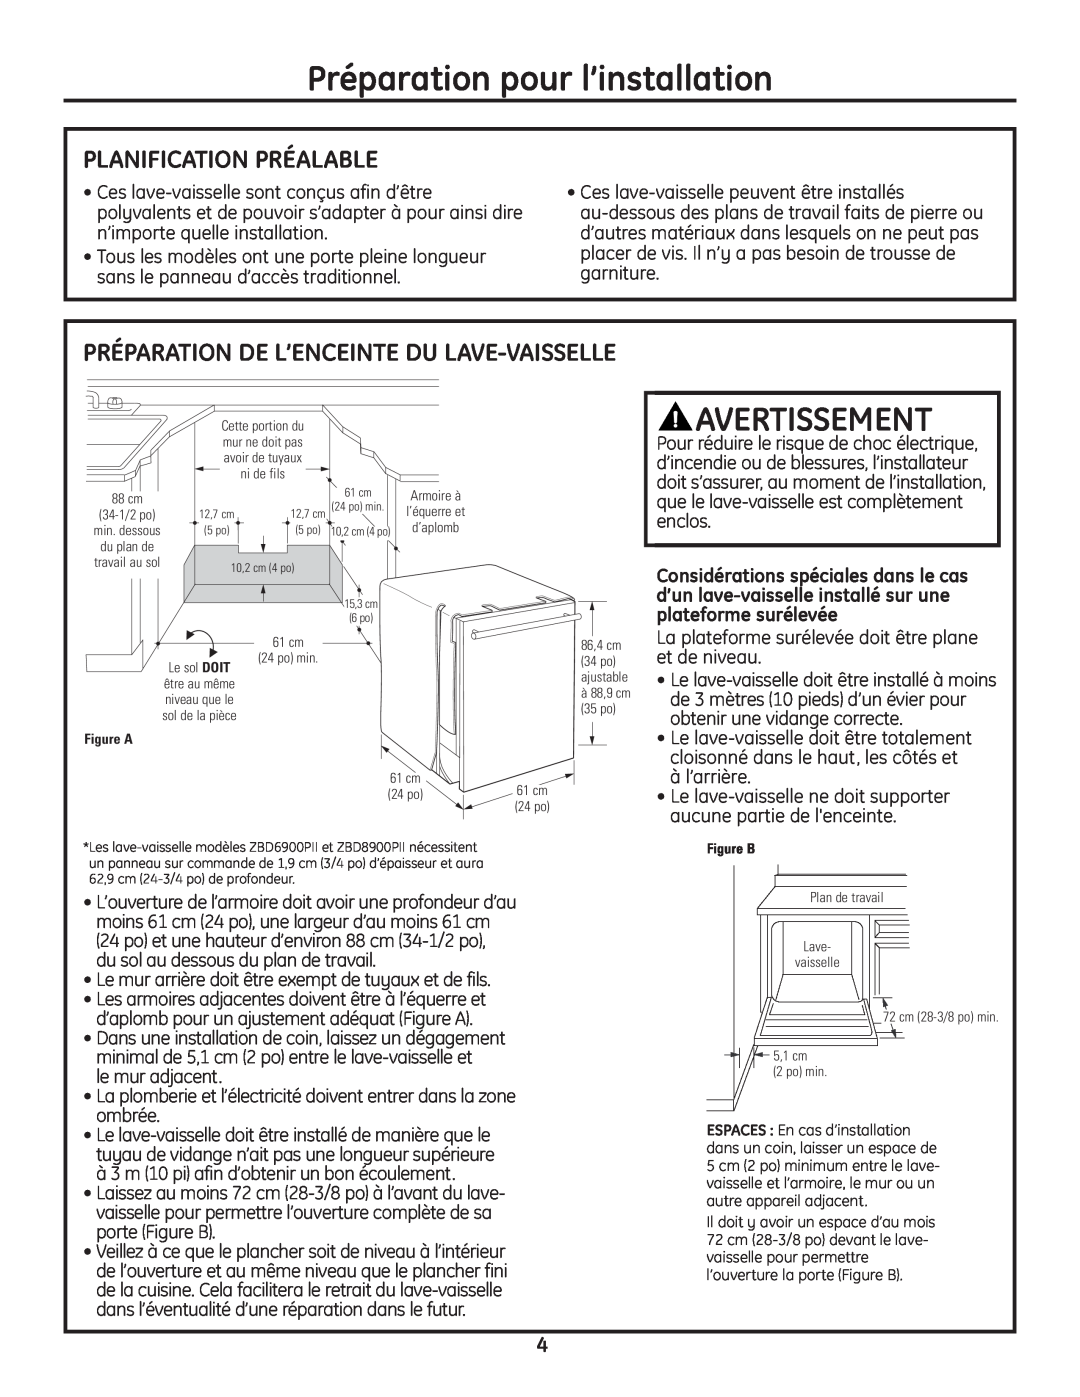 GE Monogram Built-In Dishwashers Planification Préalable, Préparation De L’Enceinte Du Lave-Vaisselle, Avertissement 